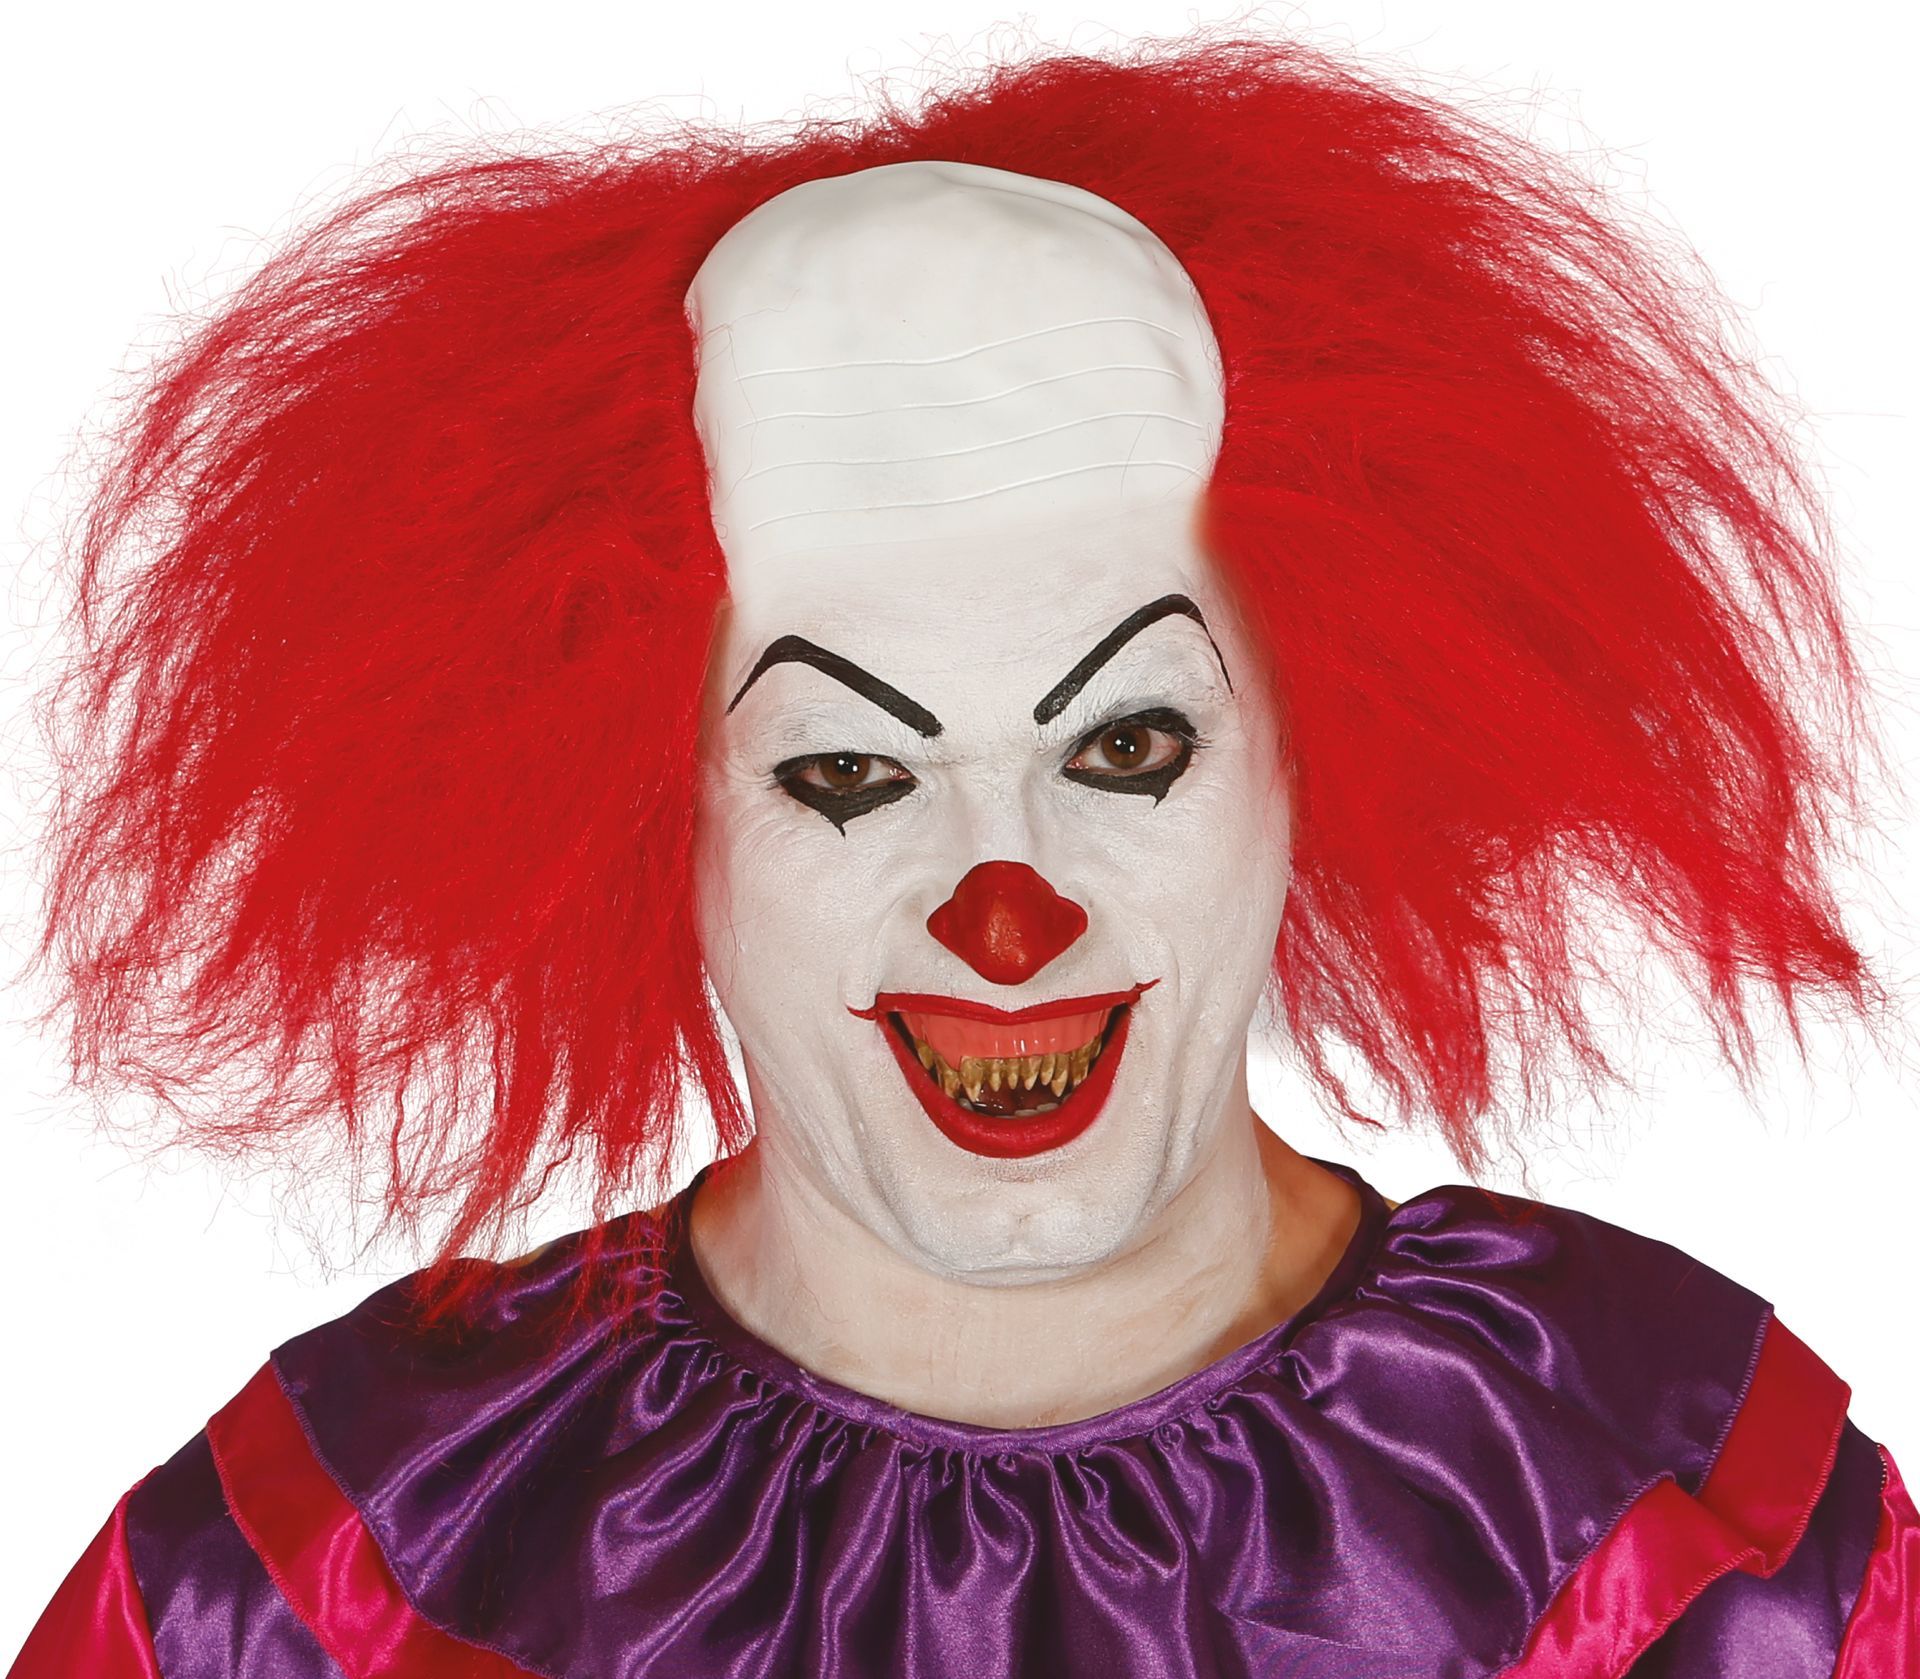 procent Montgomery Brandewijn Pruik clown met kale kop | Carnavalskleding.nl